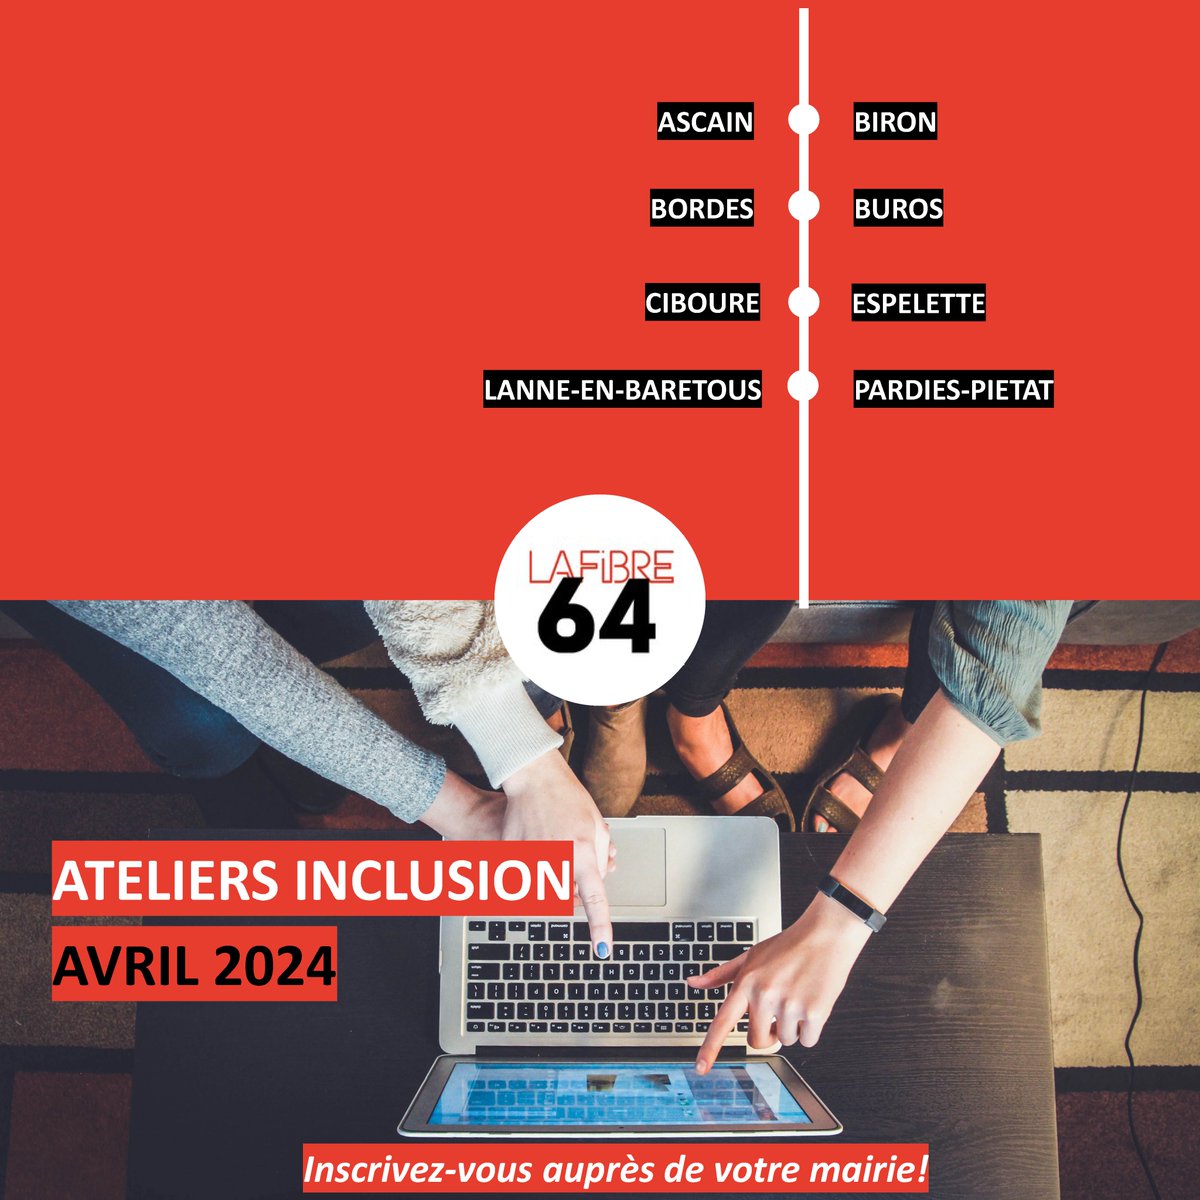 Les ateliers de médiation numérique se poursuivent au mois d'avril ! 🖥️✅ #mediation #lafibre64